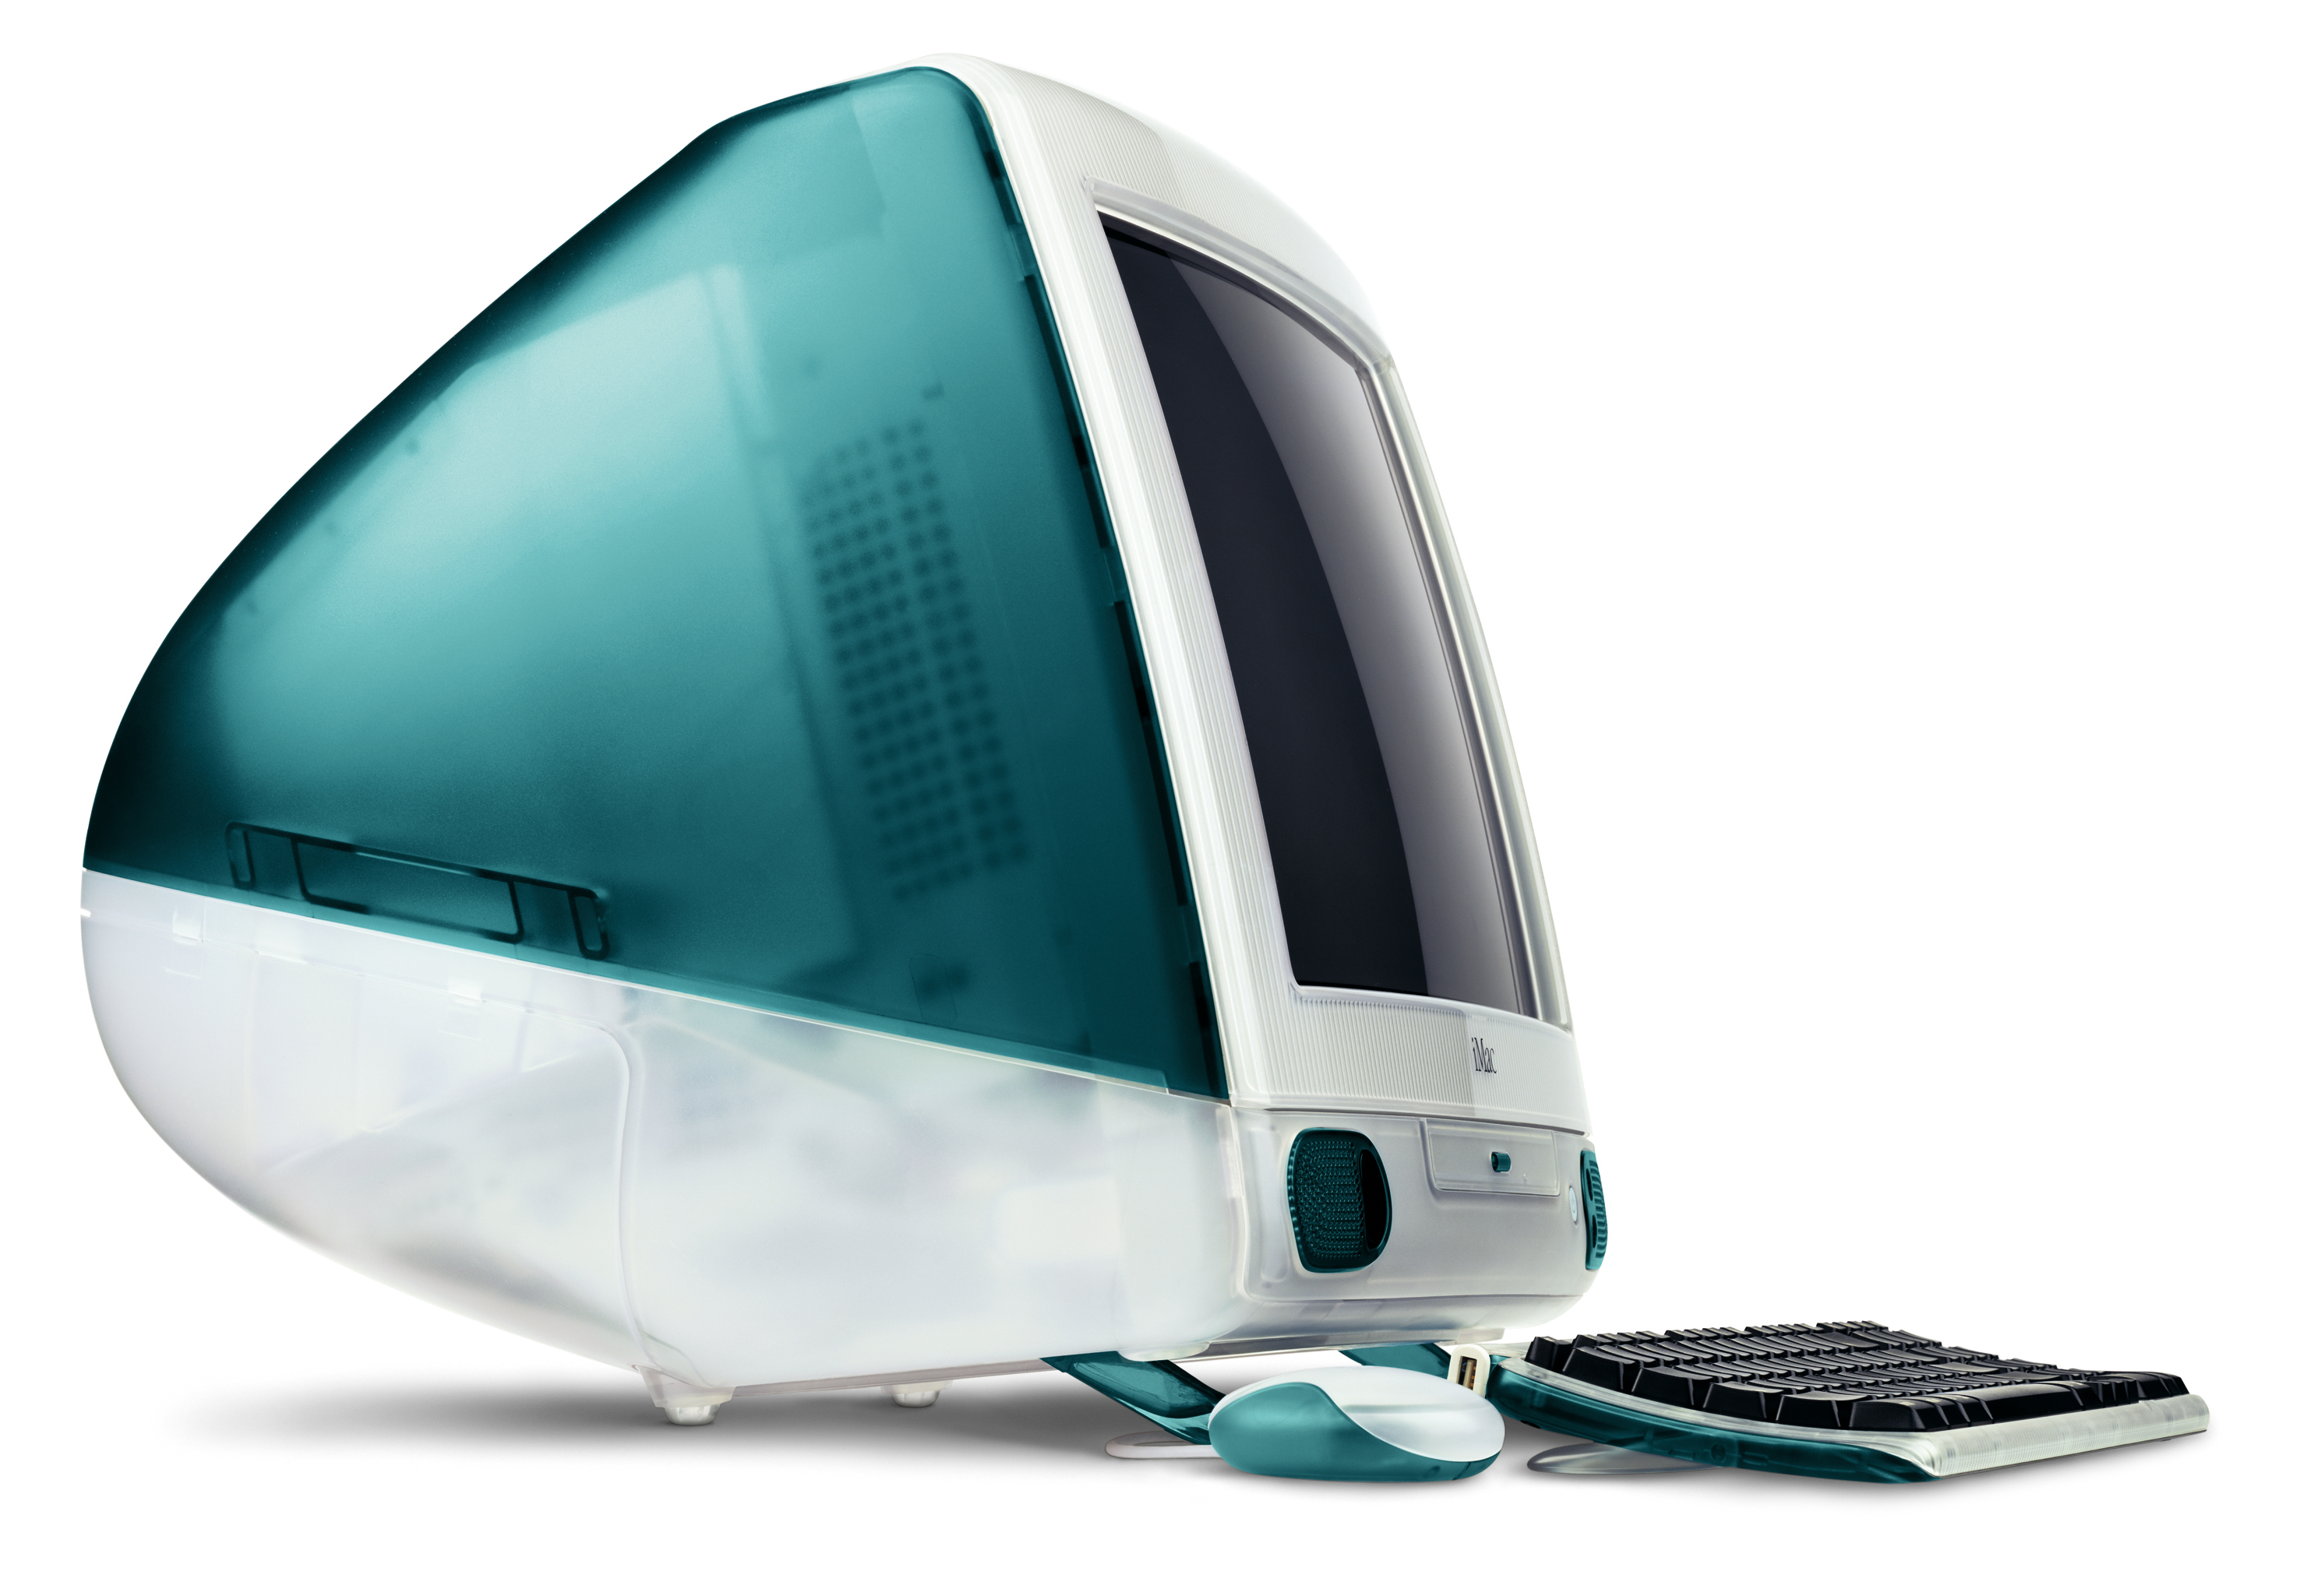  iMac на оригинальный яркий и полупрозрачный корпус